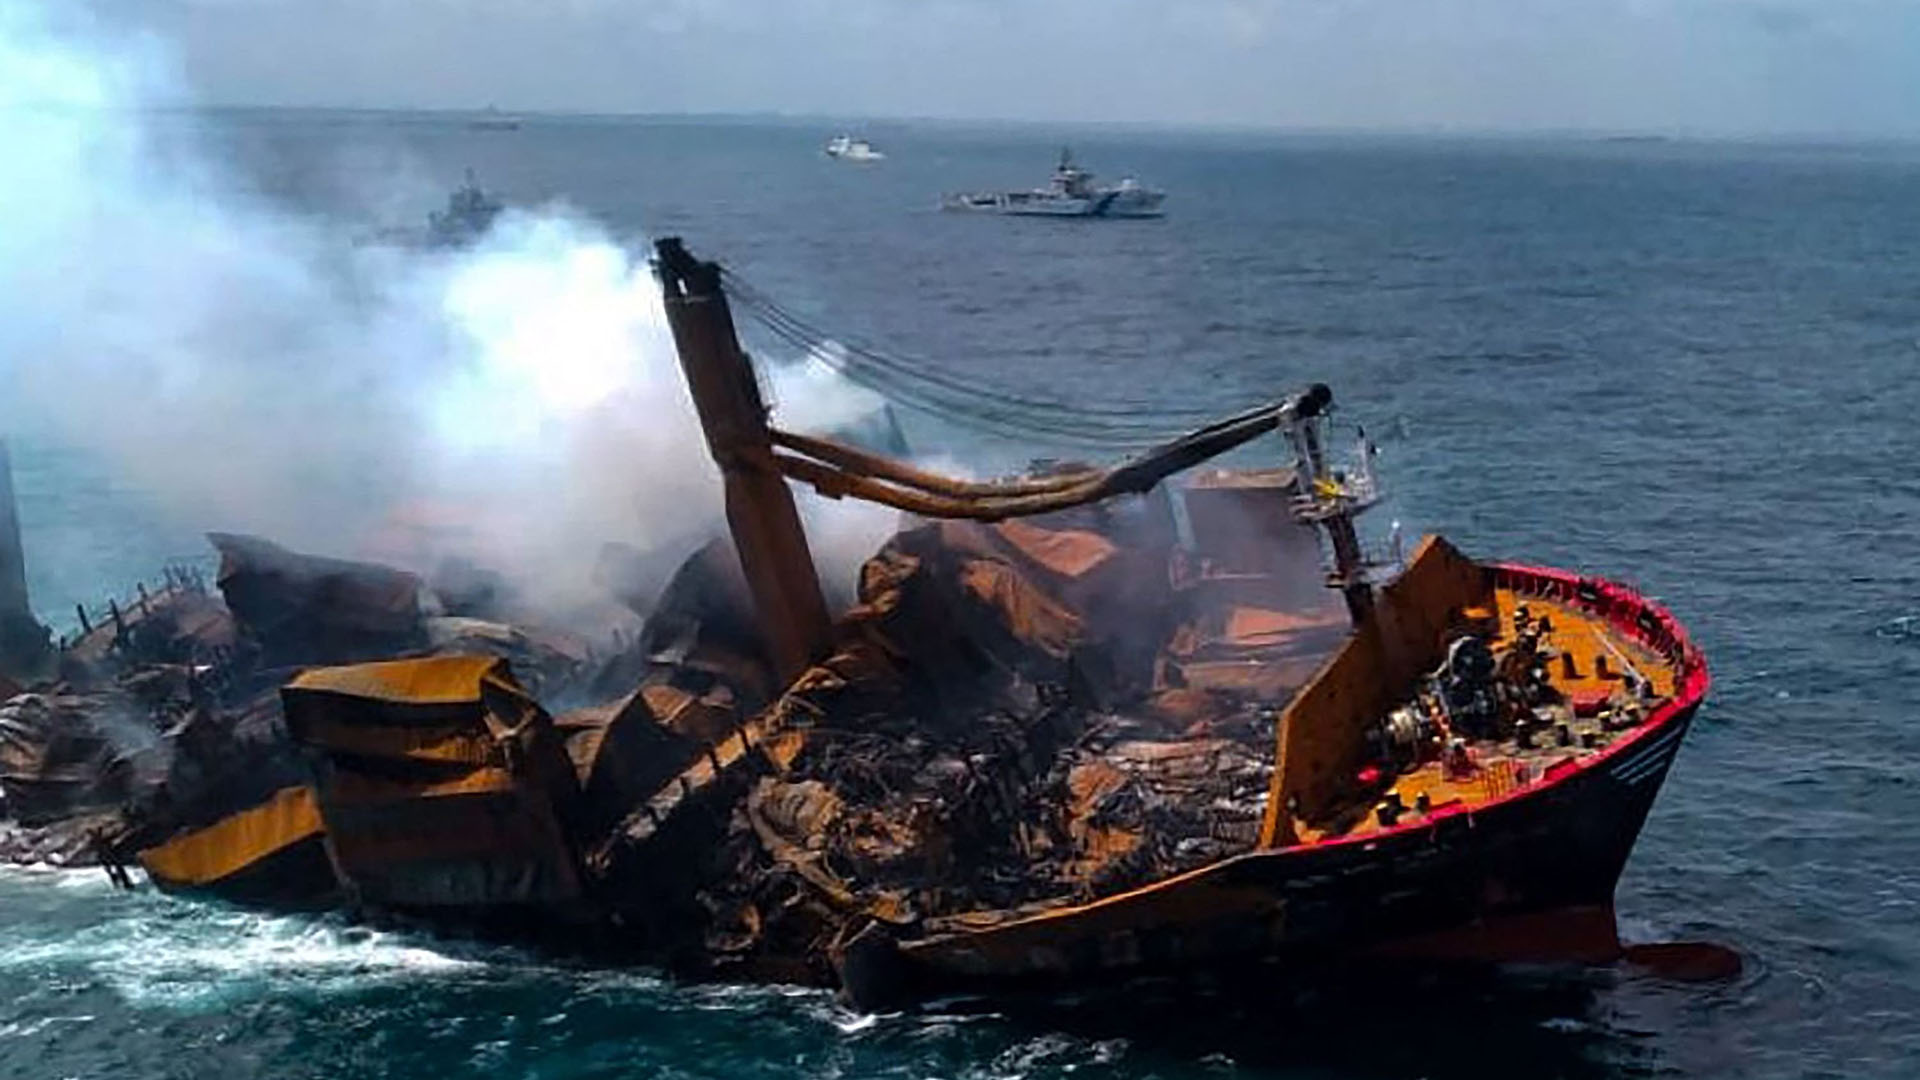 Sinking ship threatens ecological disaster for Sri Lanka